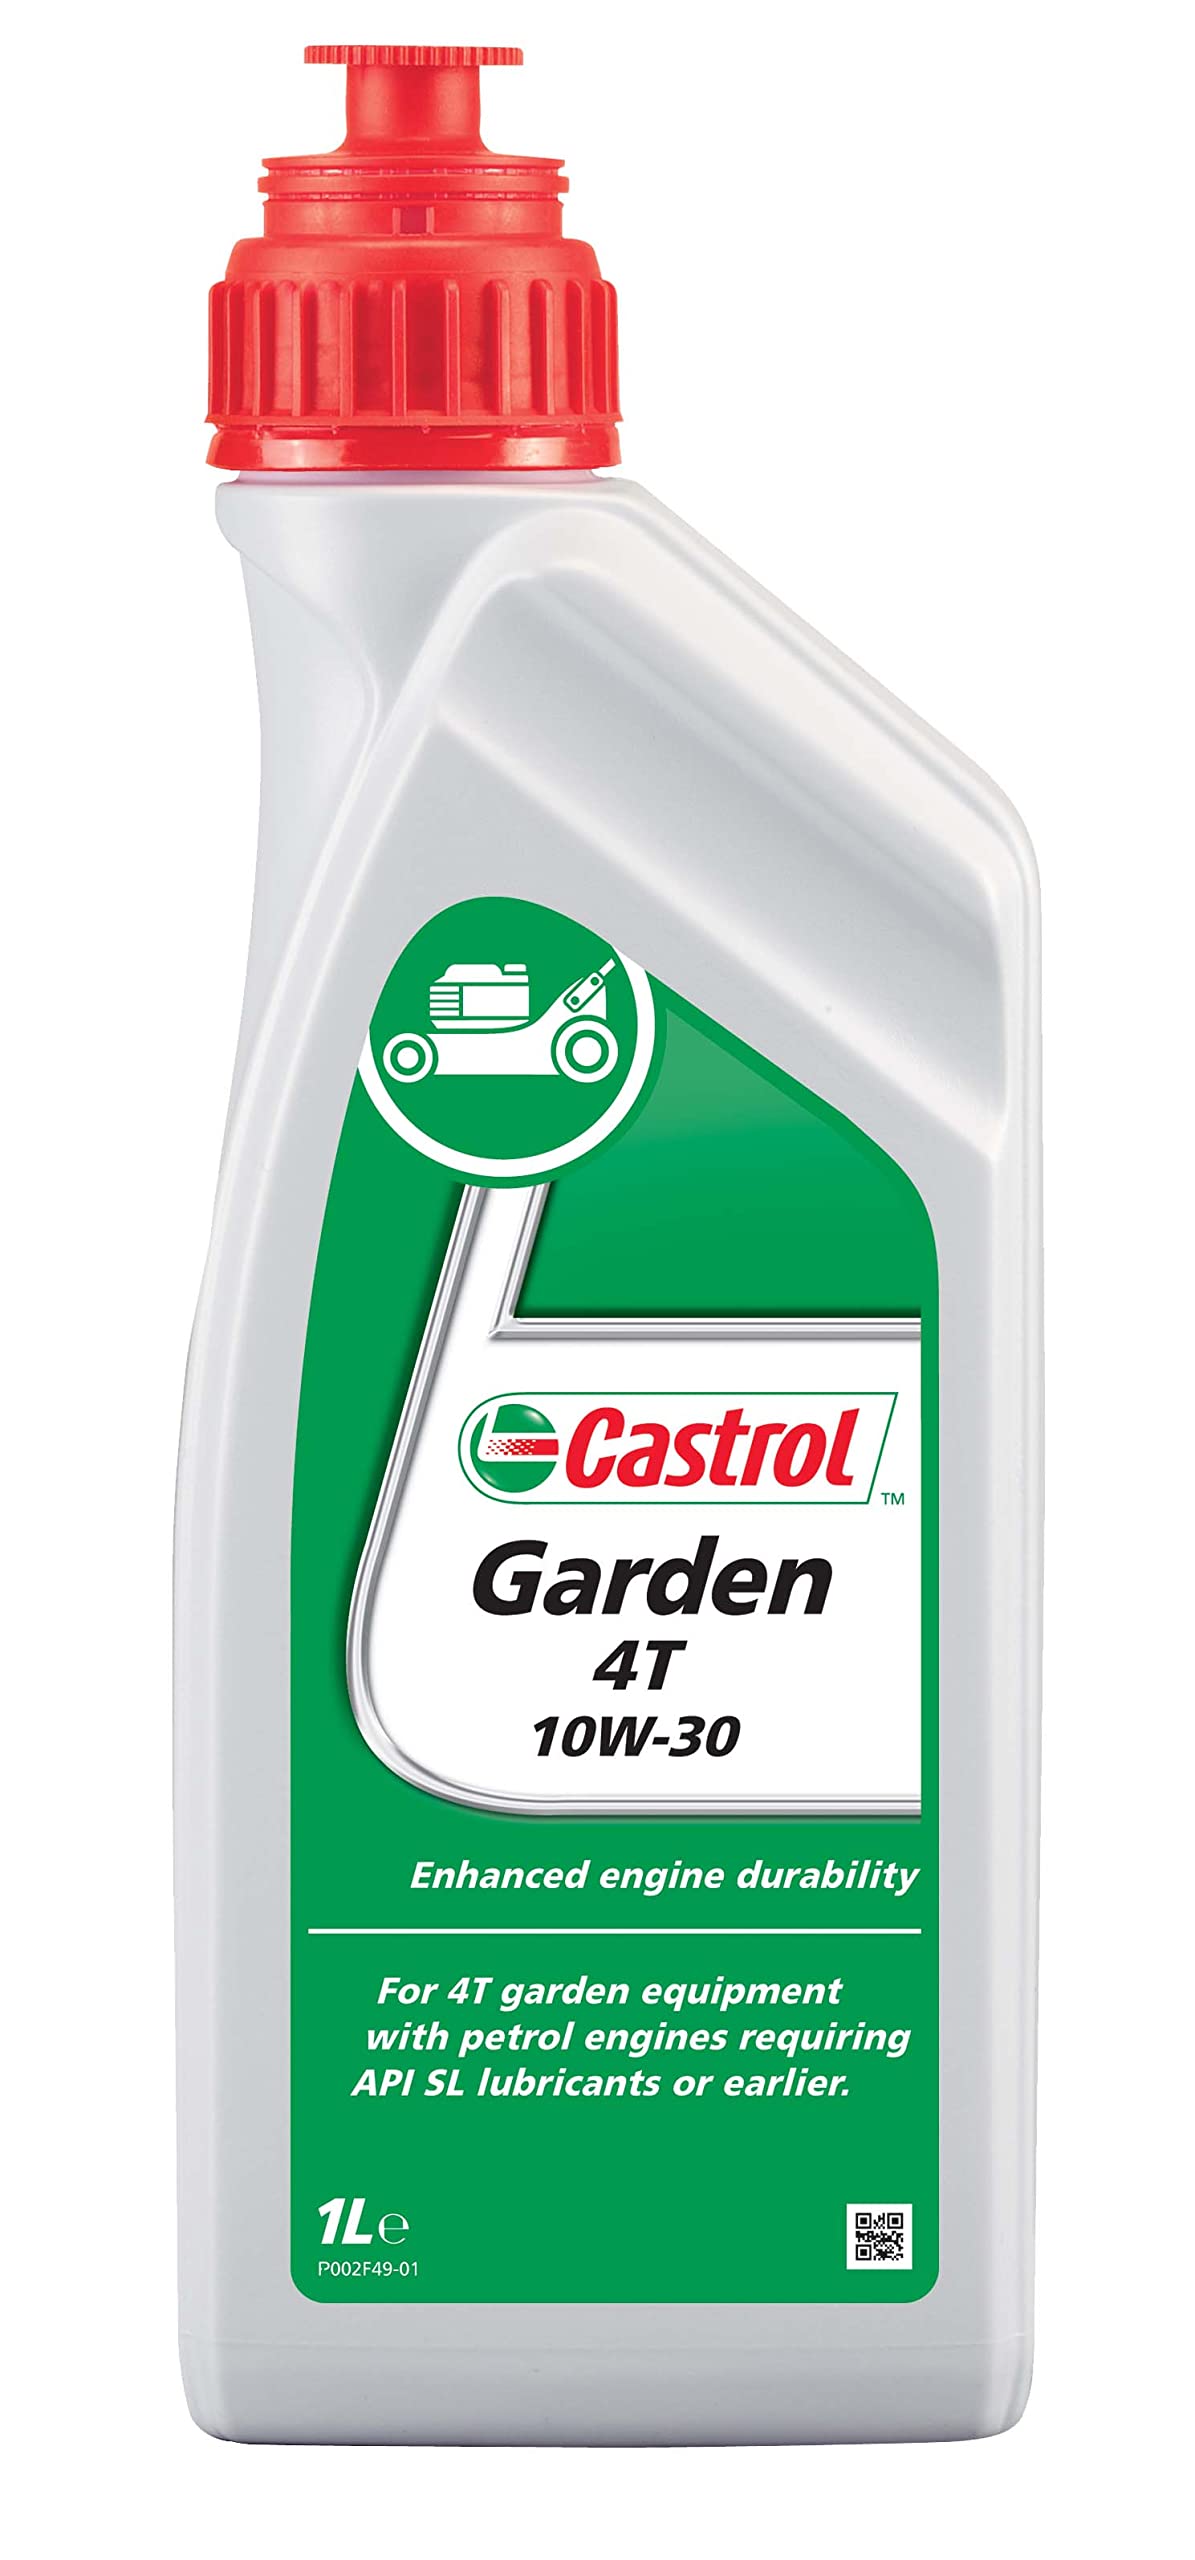 Castrol GARDEN 4T 10W-30, 1 Liter von Castrol